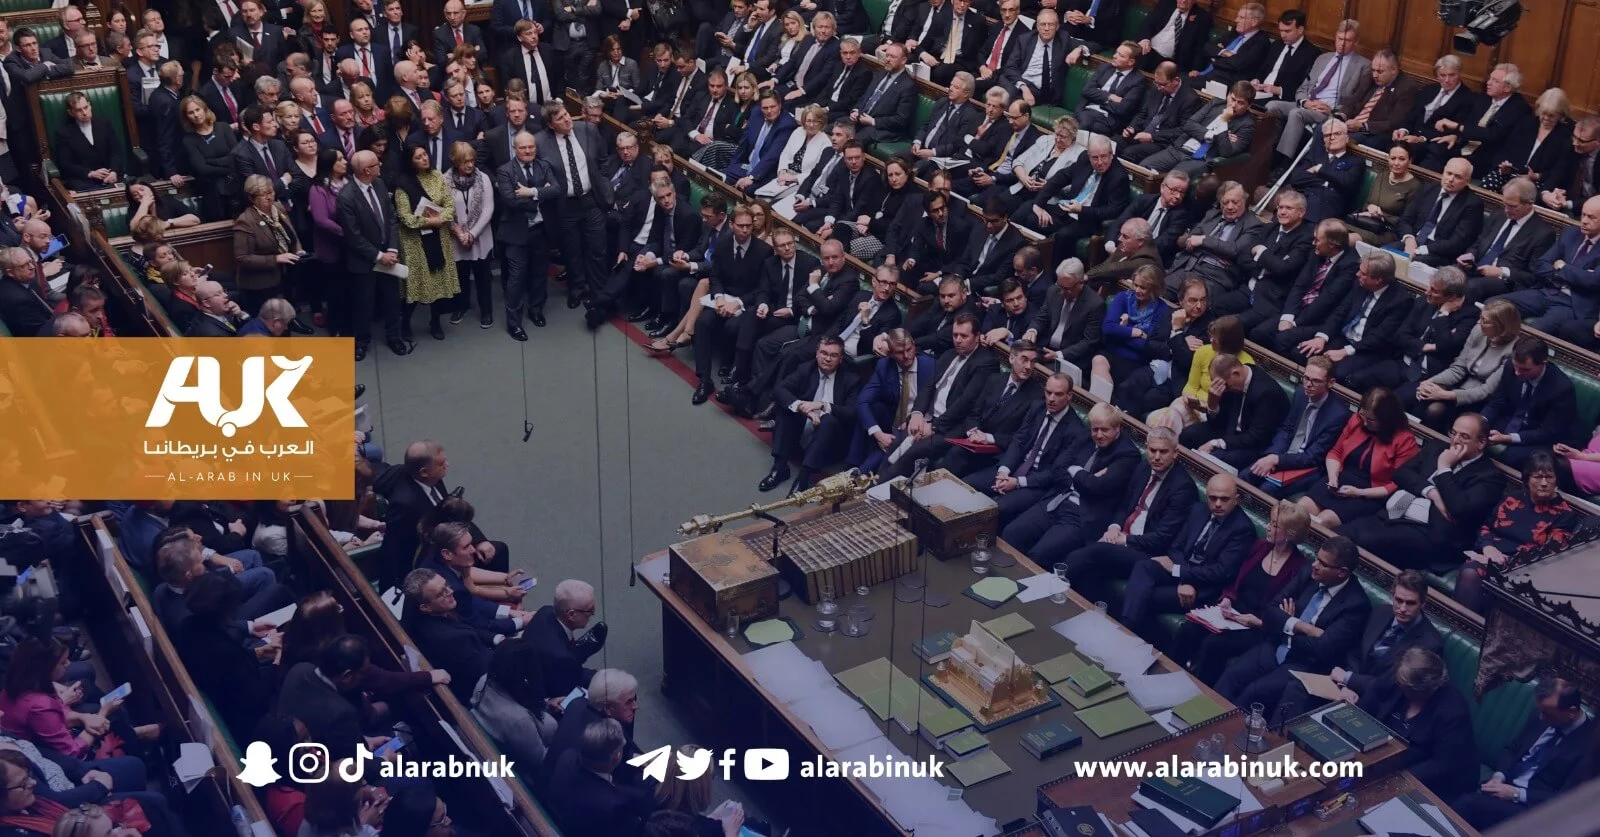 180 من أصل 650 نائبًا برلمانيًا في بريطانيا يتلقون دعمًا ماليًا من جماعات إسرائيلية 